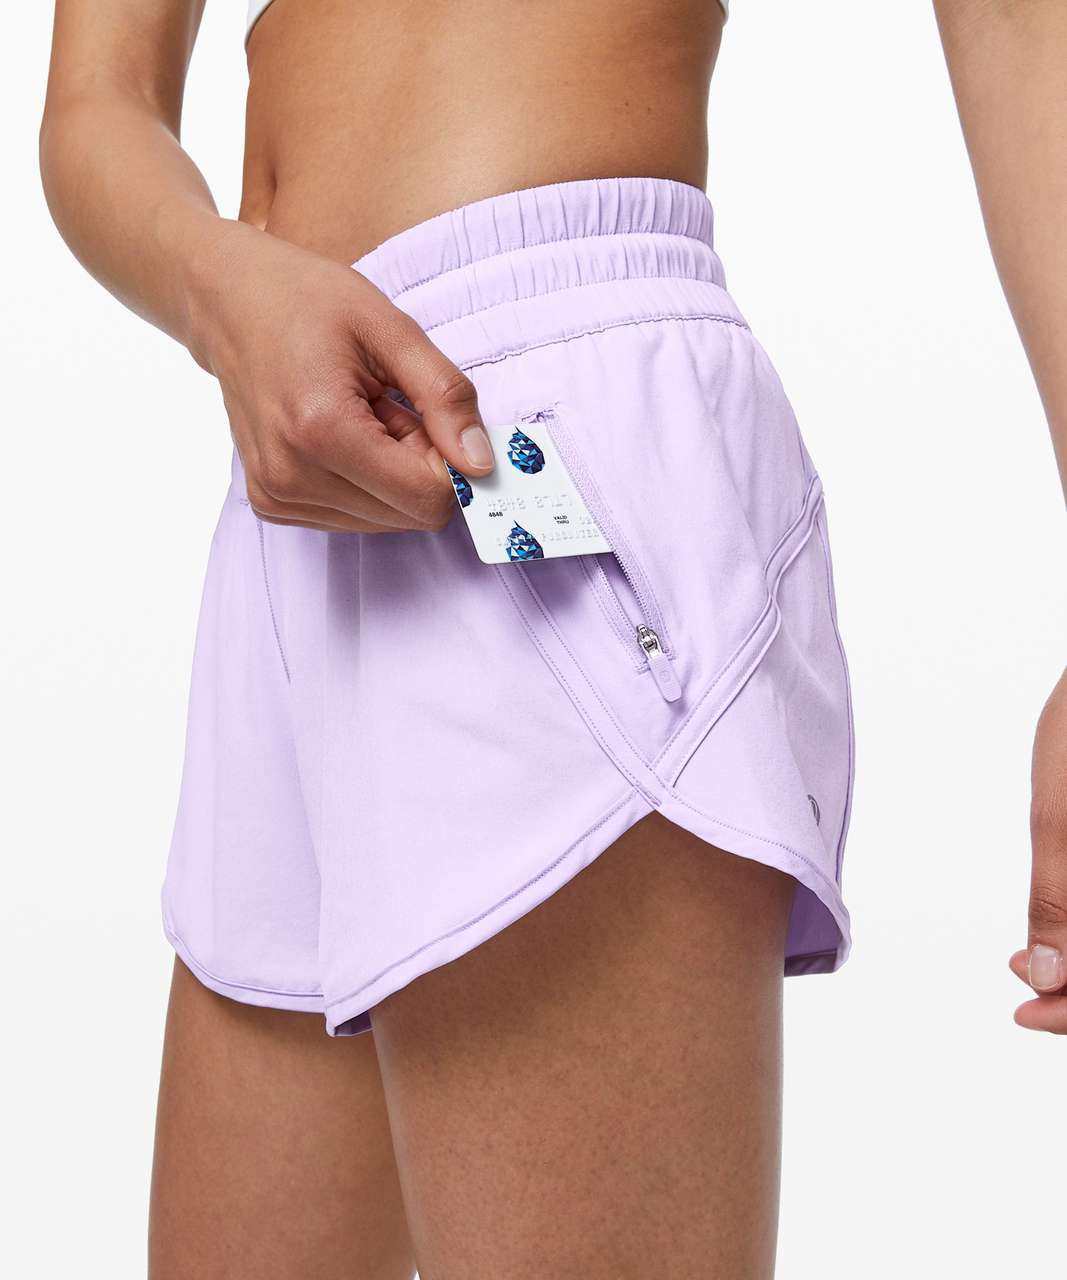 Lululemon Seawheeze purple tracker shorts size 6